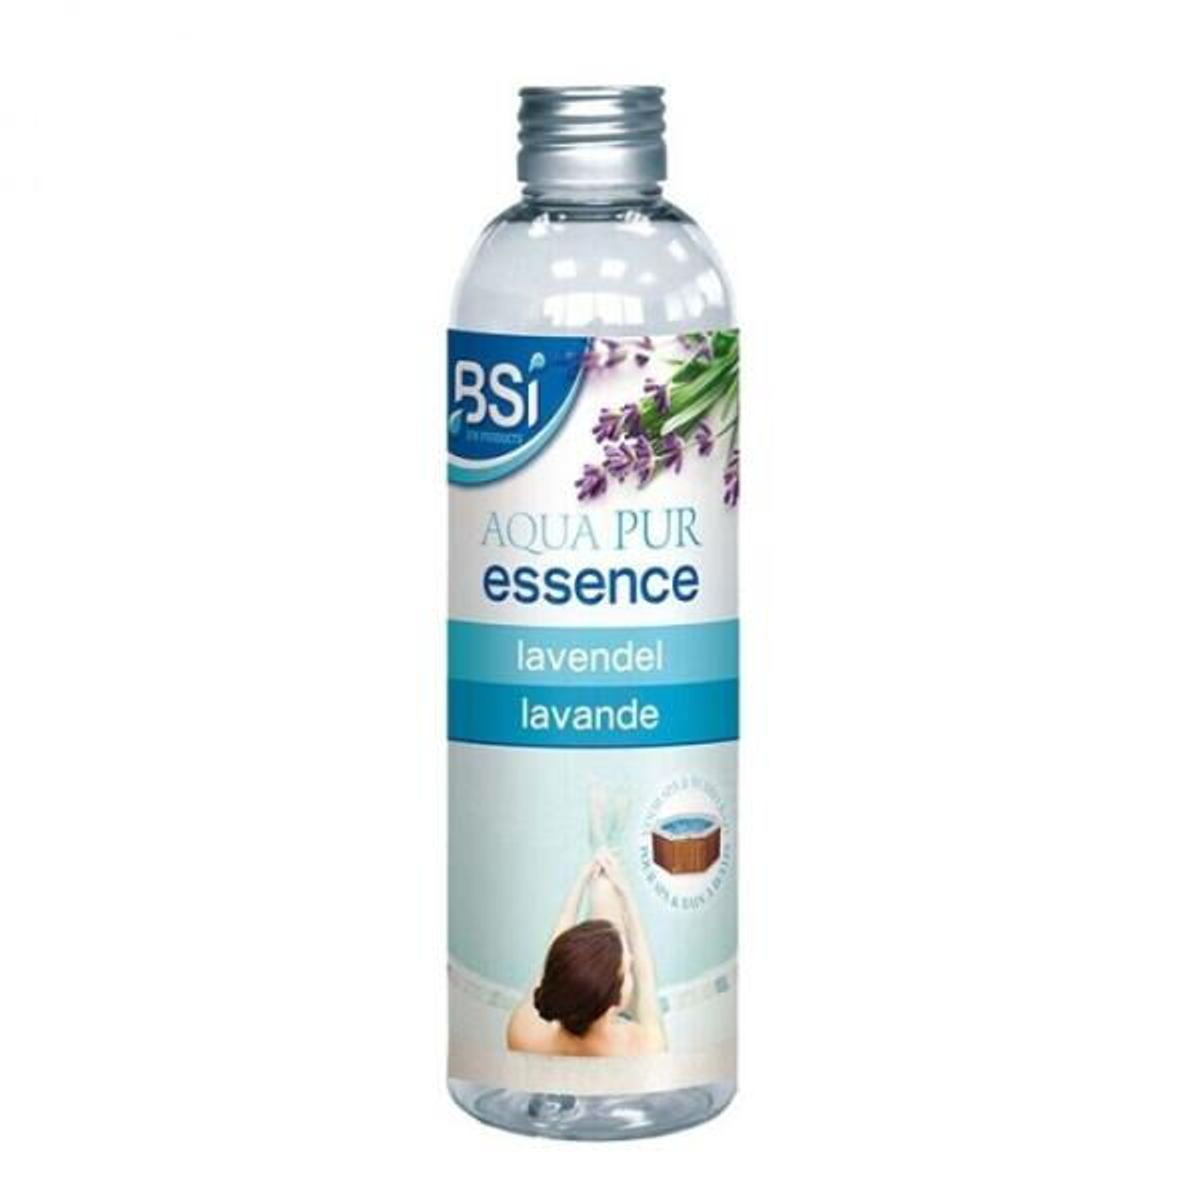 BSI Aqua Pur Essence Lavendel 250 ml